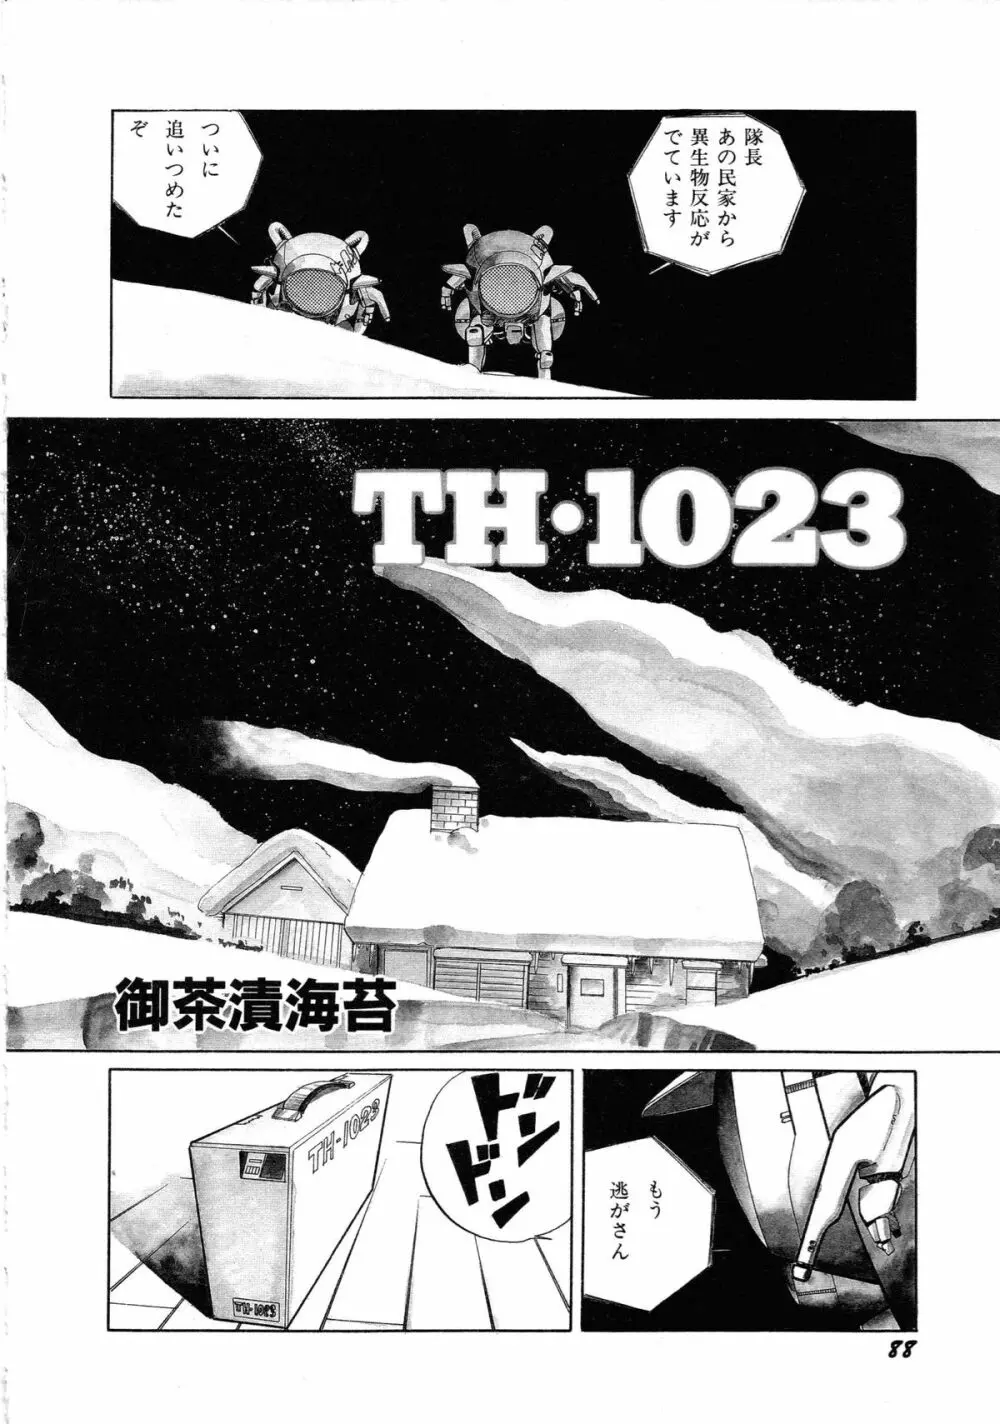 ロボット&美少女傑作選 レモン・ピープル1982-1986 92ページ